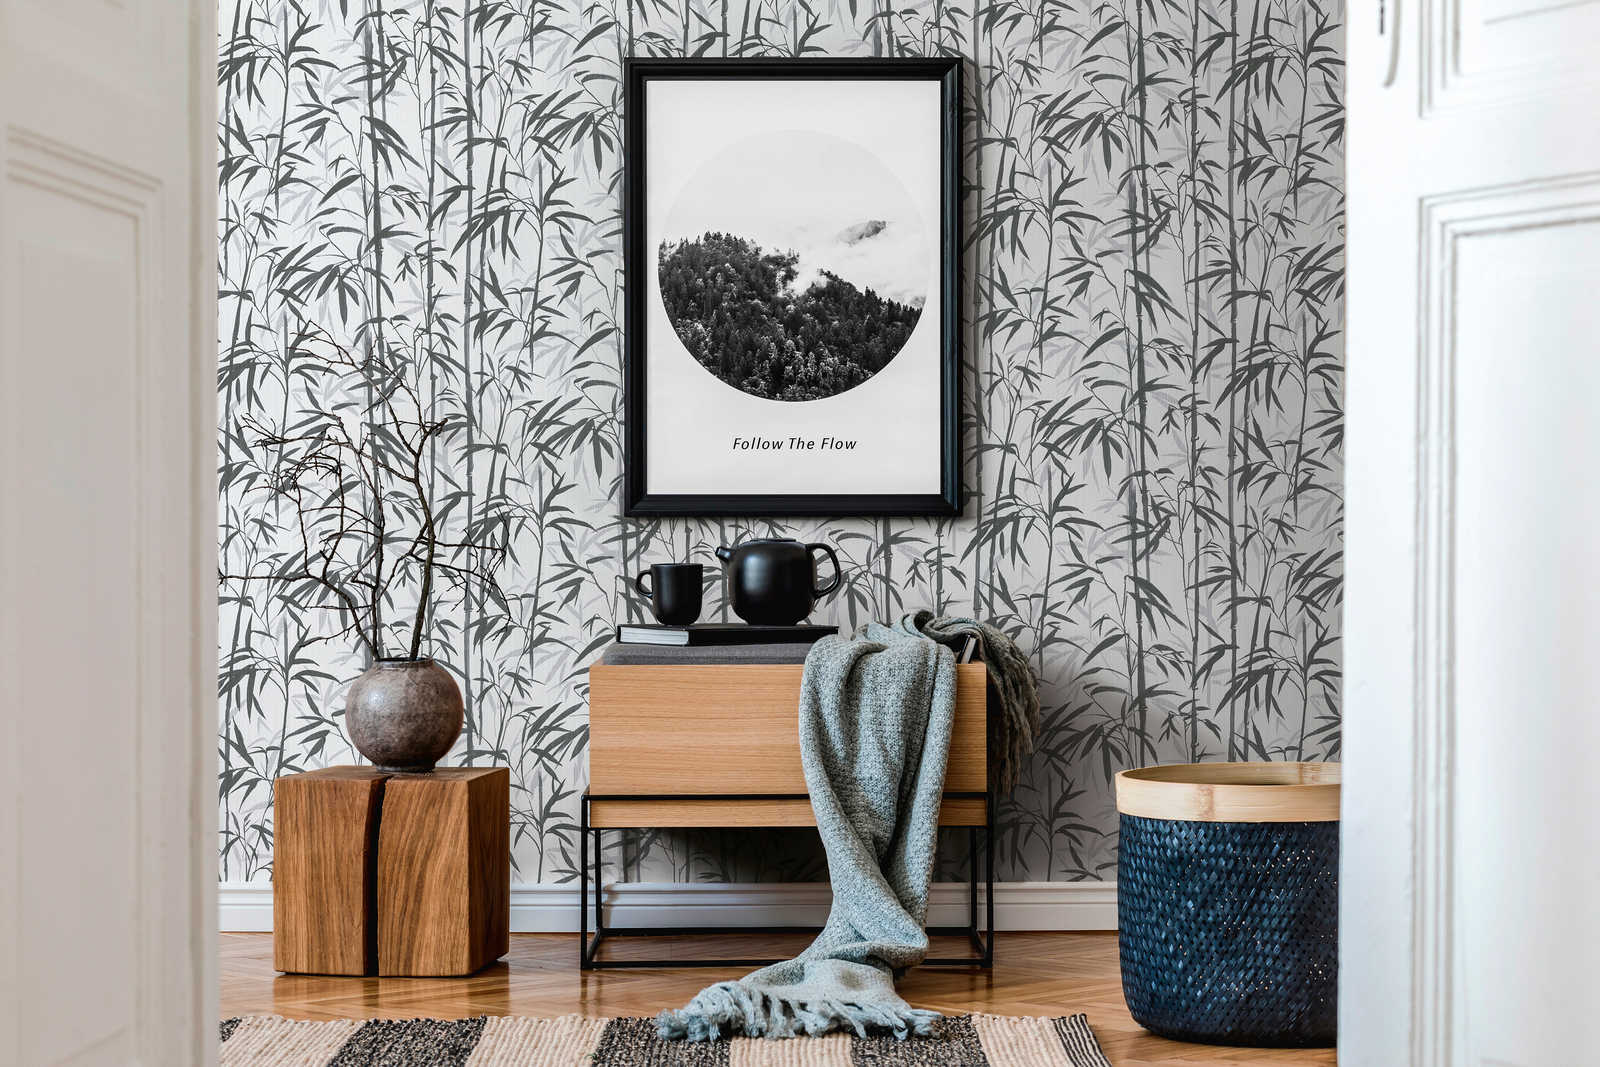             MICHALSKY vliesbehang bamboe design in zwart en wit
        